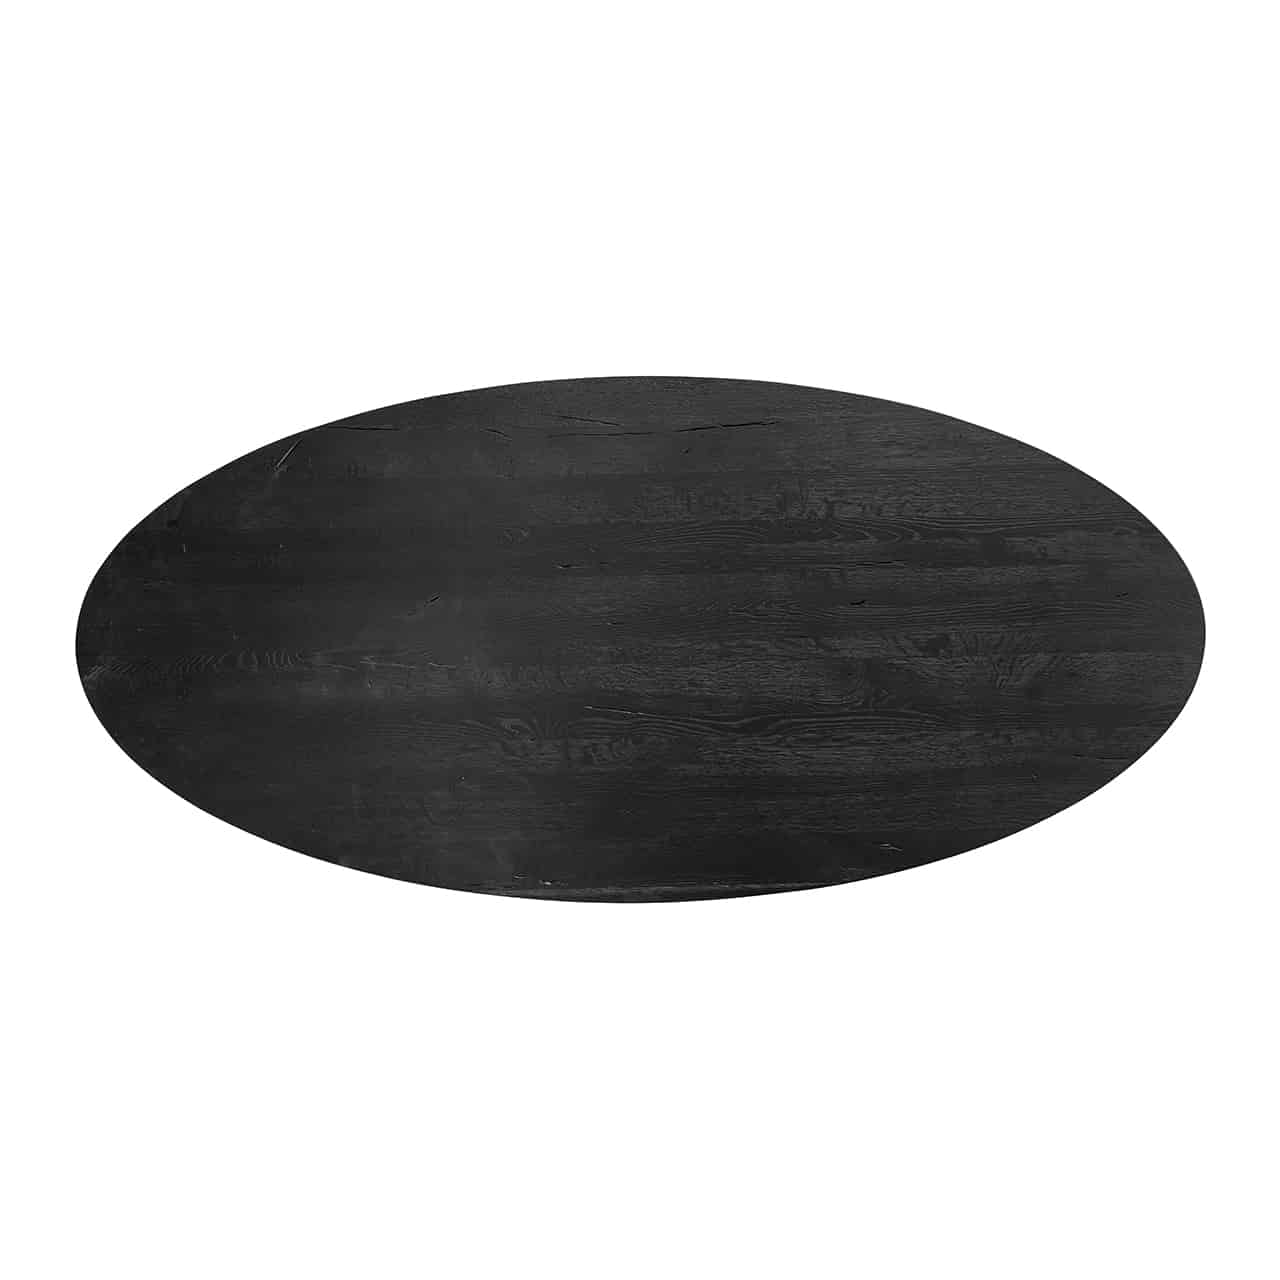 Ovale Tischplatte in schwarz.